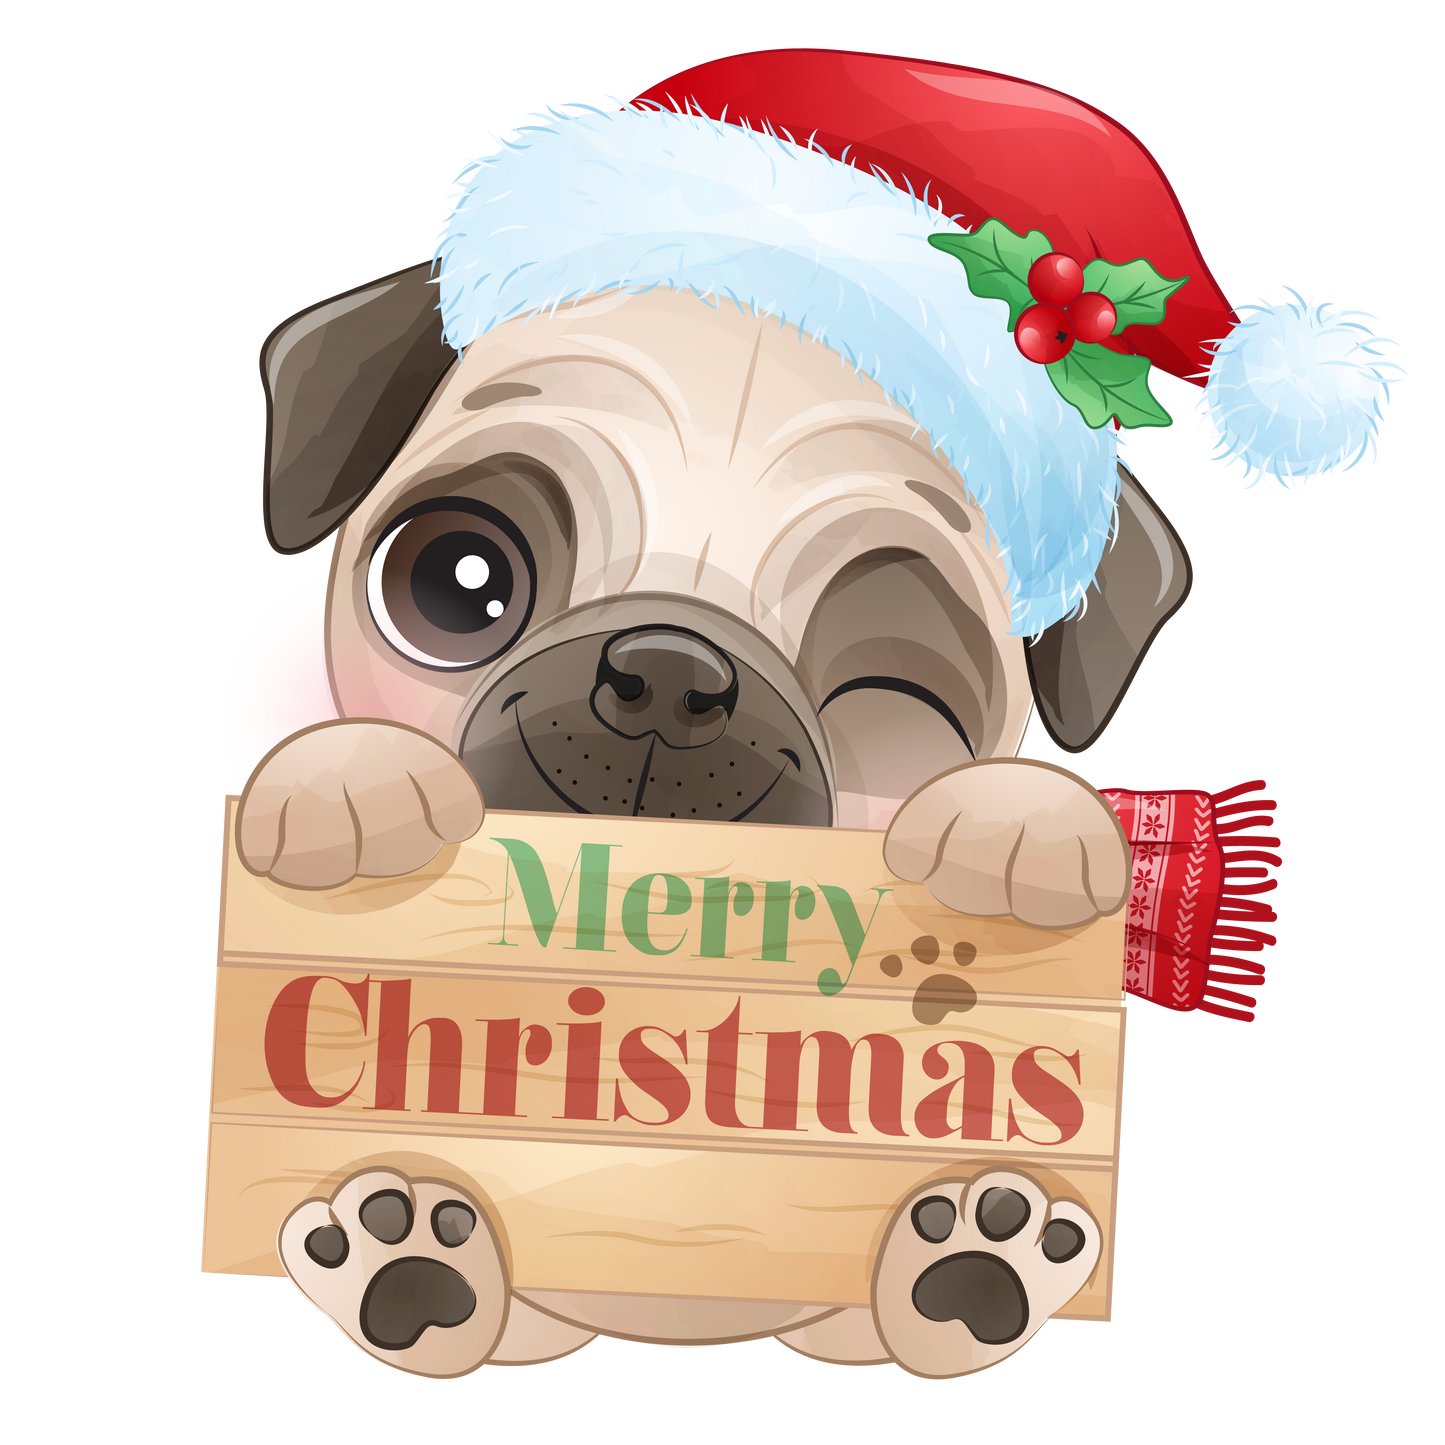 Stickers - Pug, Christmas Pug Holding Merry Christmas